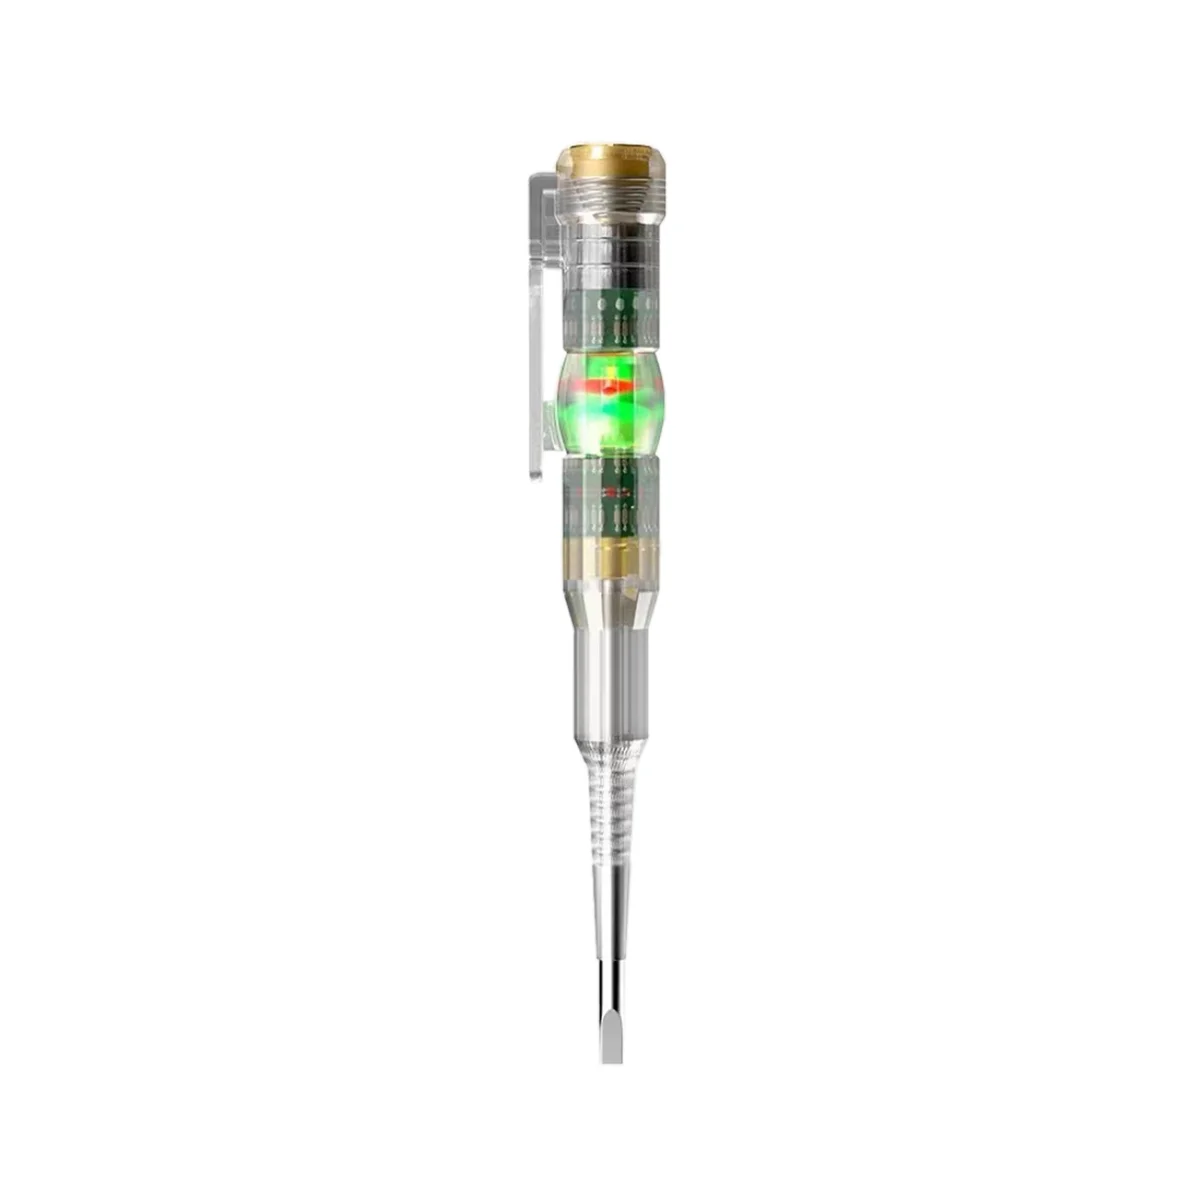  többfunkciós elektromos toll nagy fényerejű dupla lámpás elektromos toll mérő villanyszerelő indukciós ceruza - 2